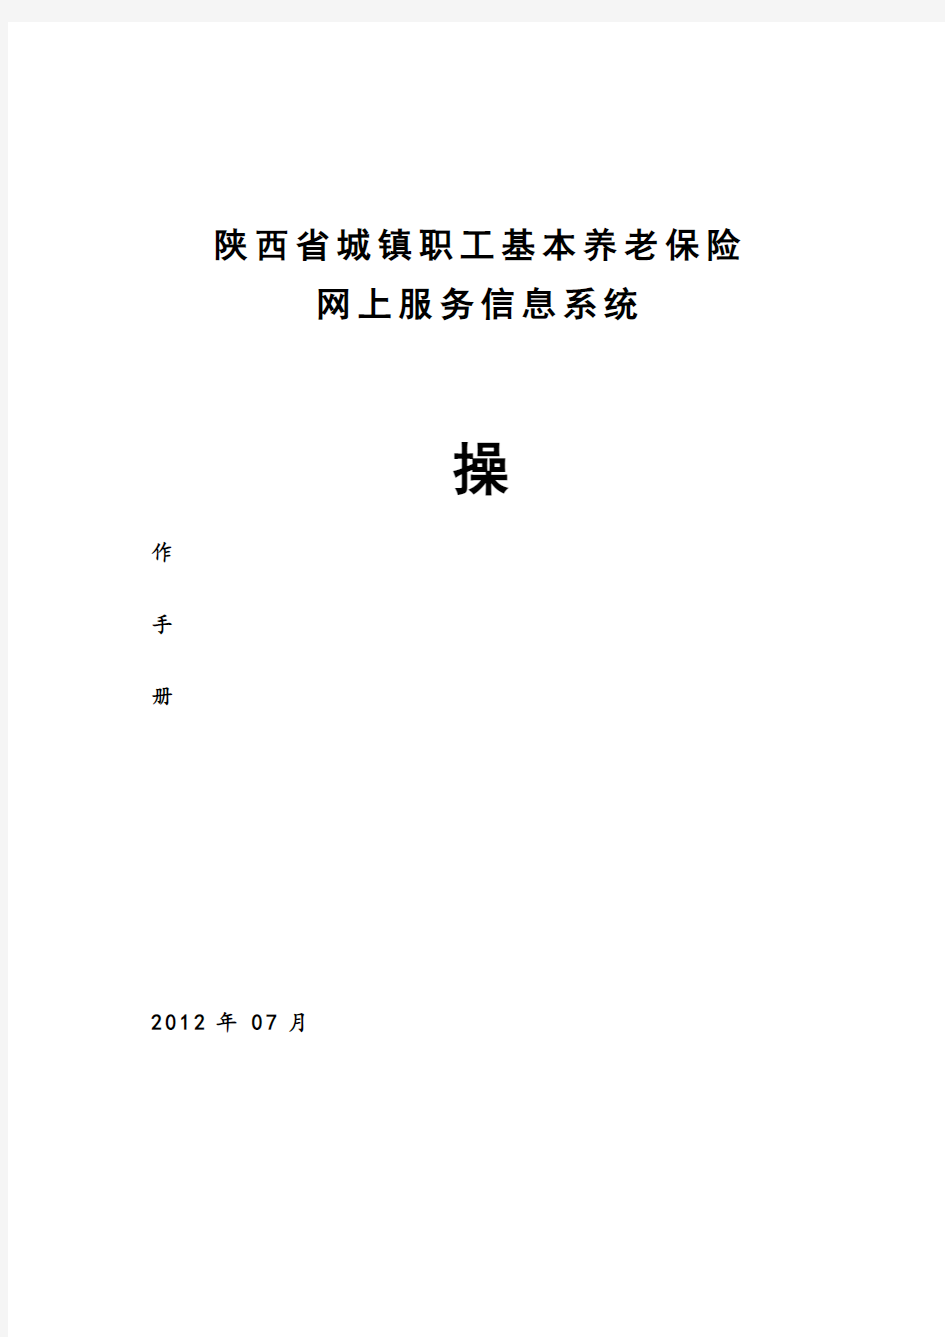 陕西省城镇职工基本养老保险网上服务信息系统操作手册